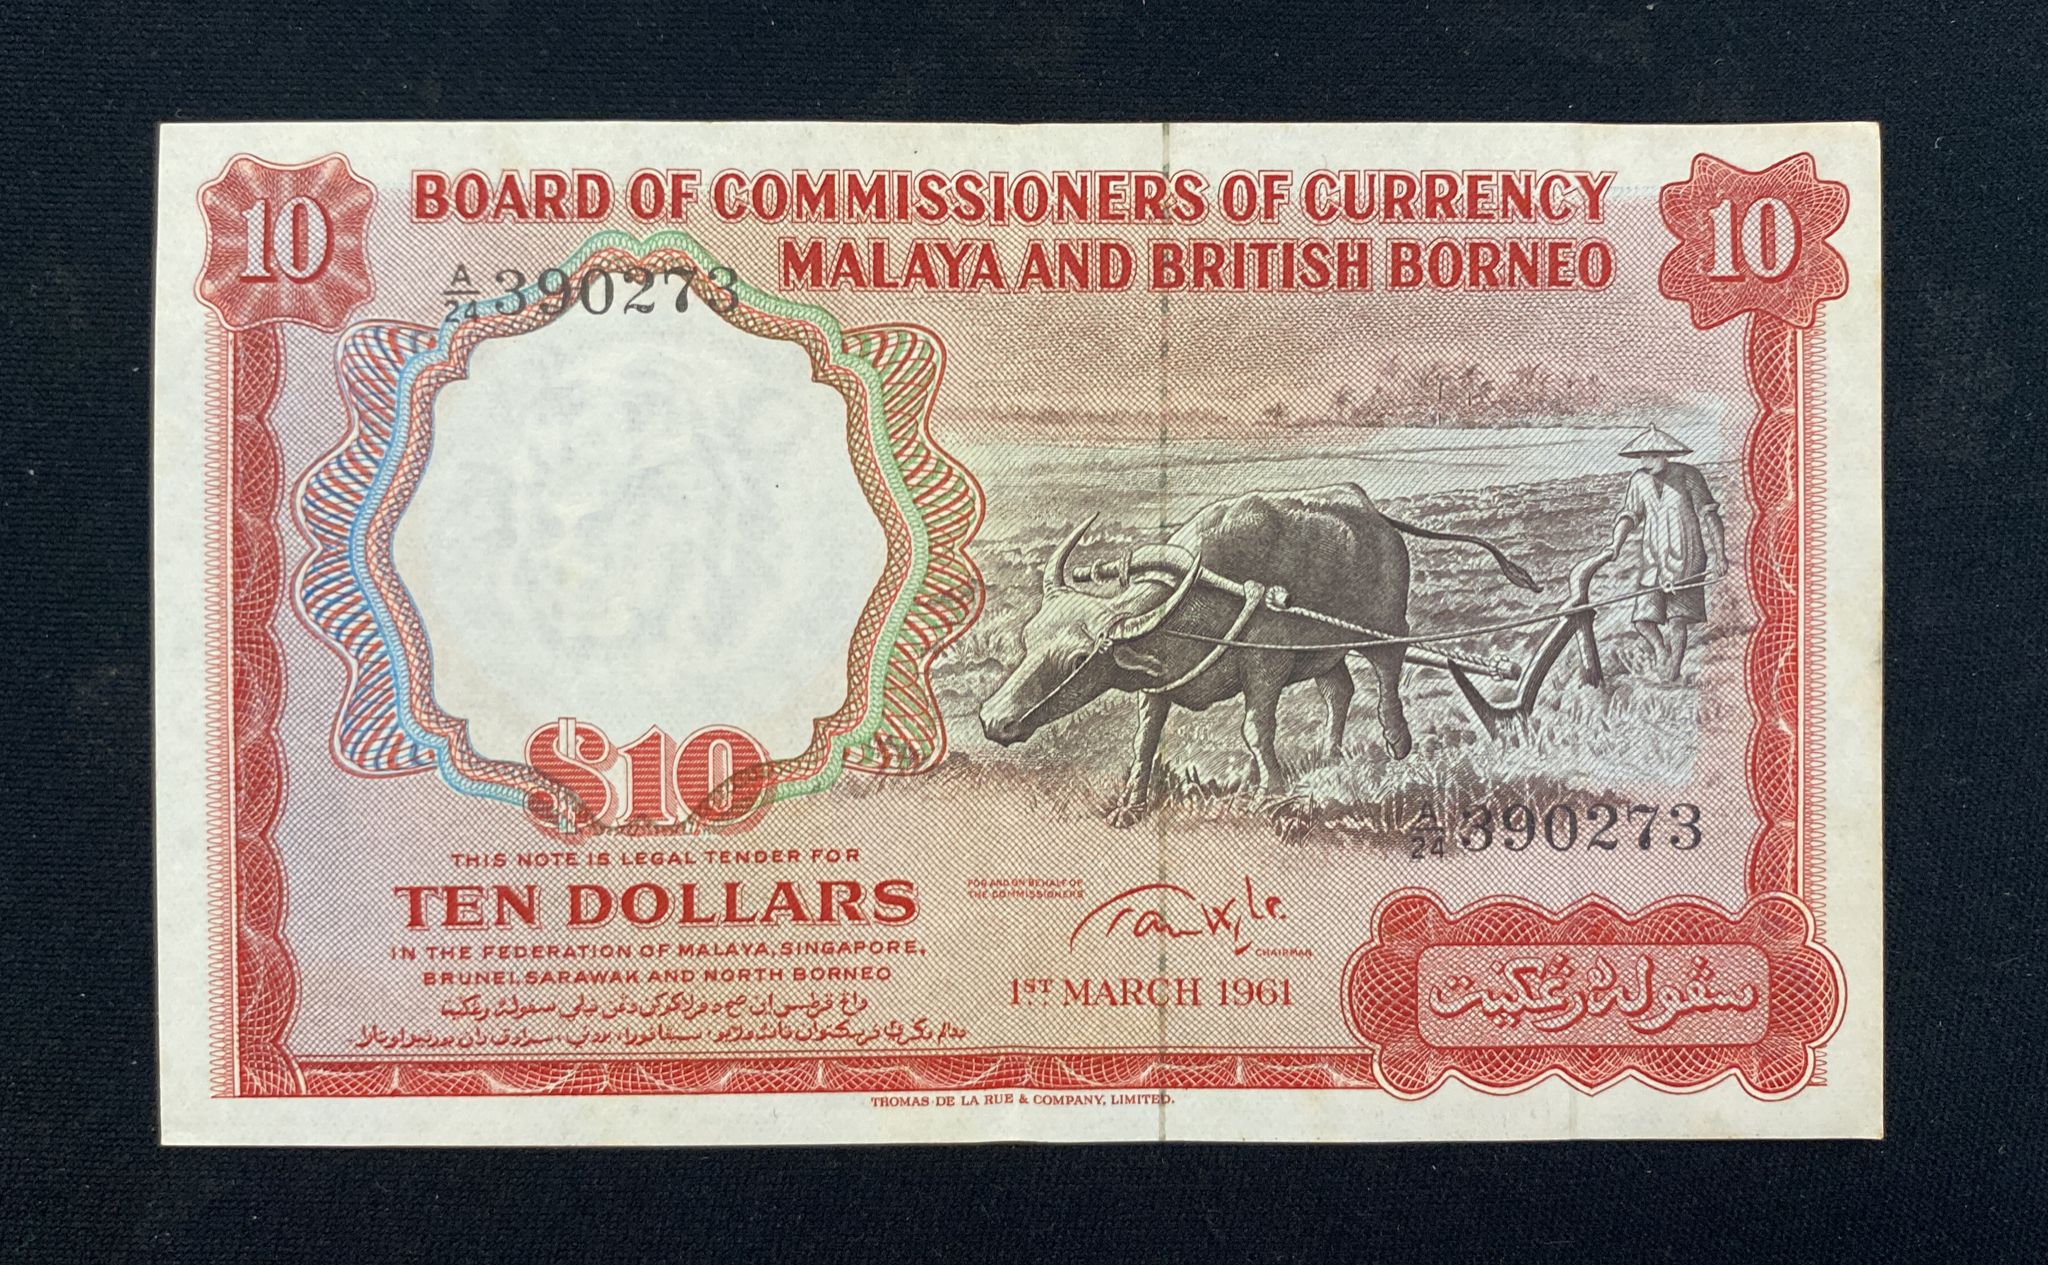 MALAYA & BRITISH BORNEO 1; 10 DOLLARS 1959, 1961 (4) - Image 5 of 17